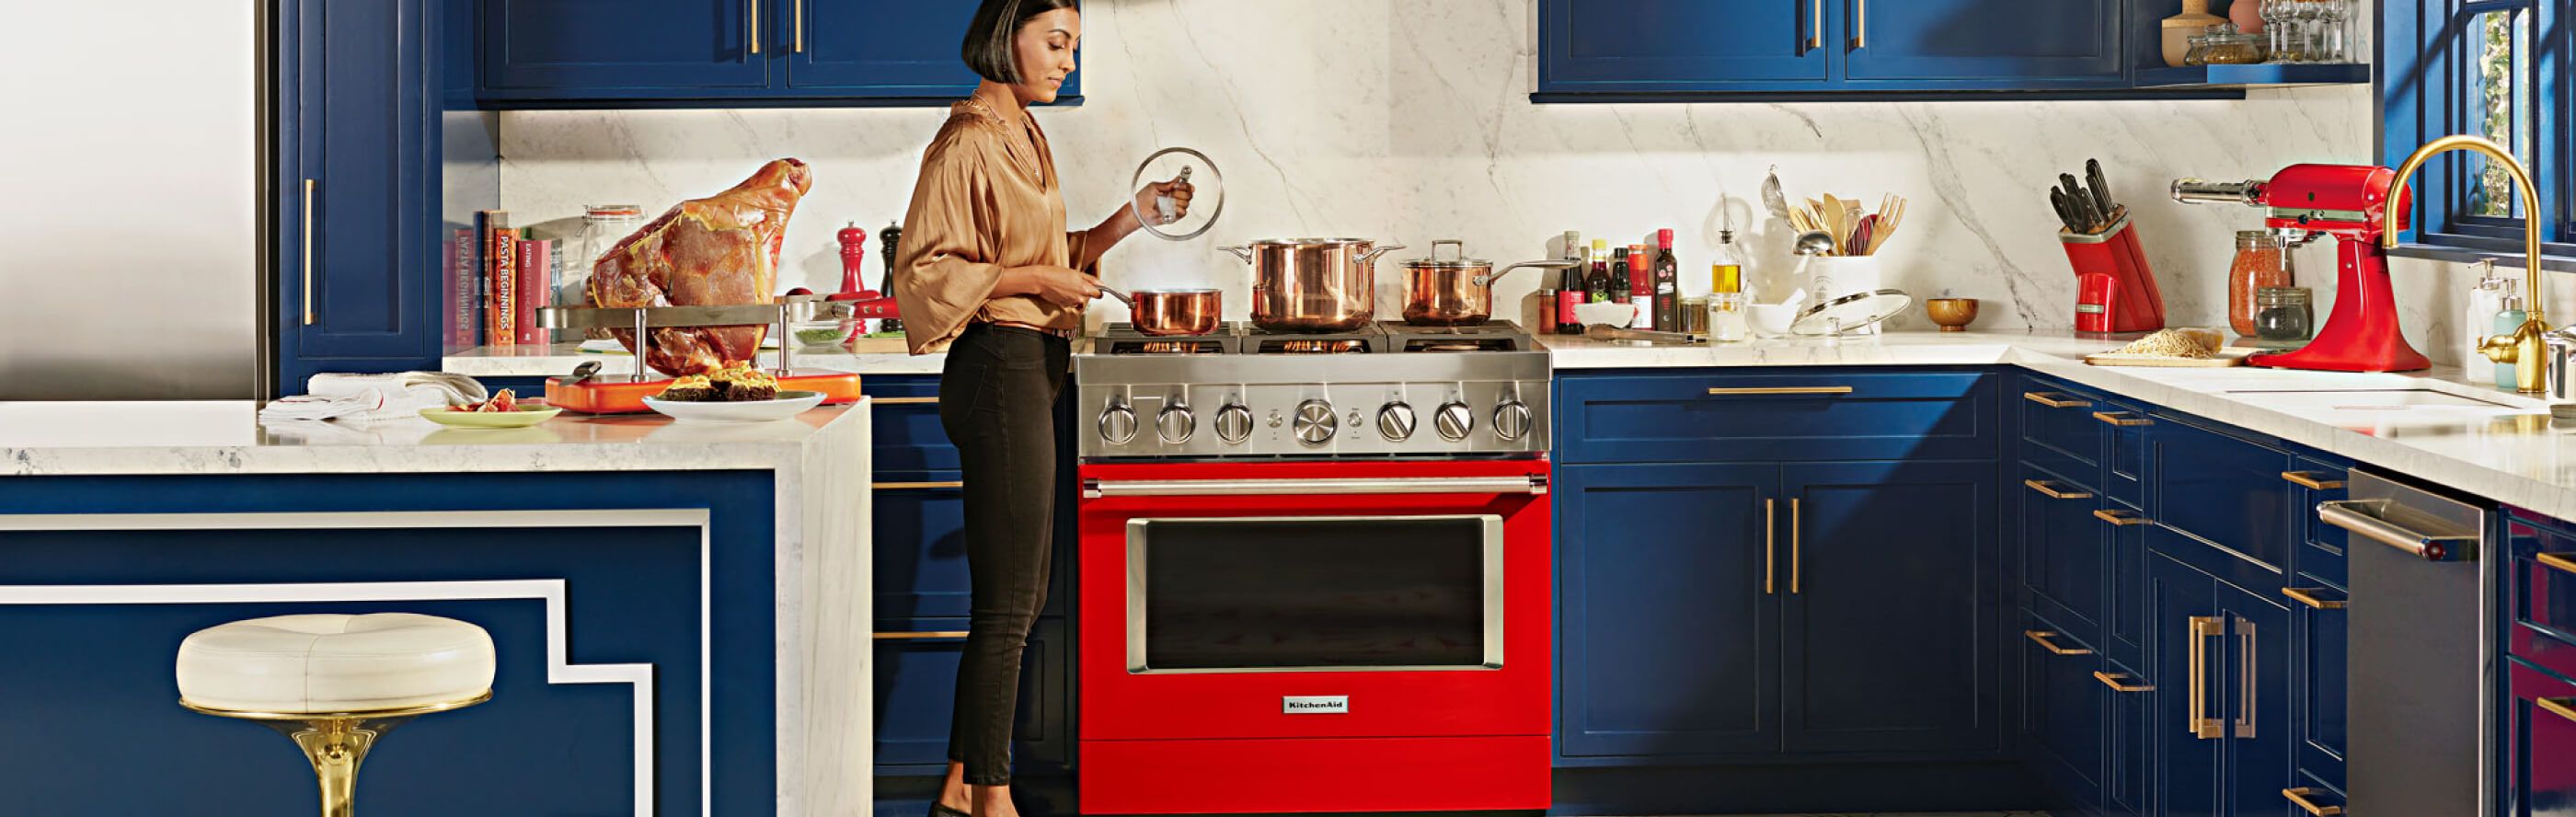 Red KitchenAid® range set in blue, modern kitchen